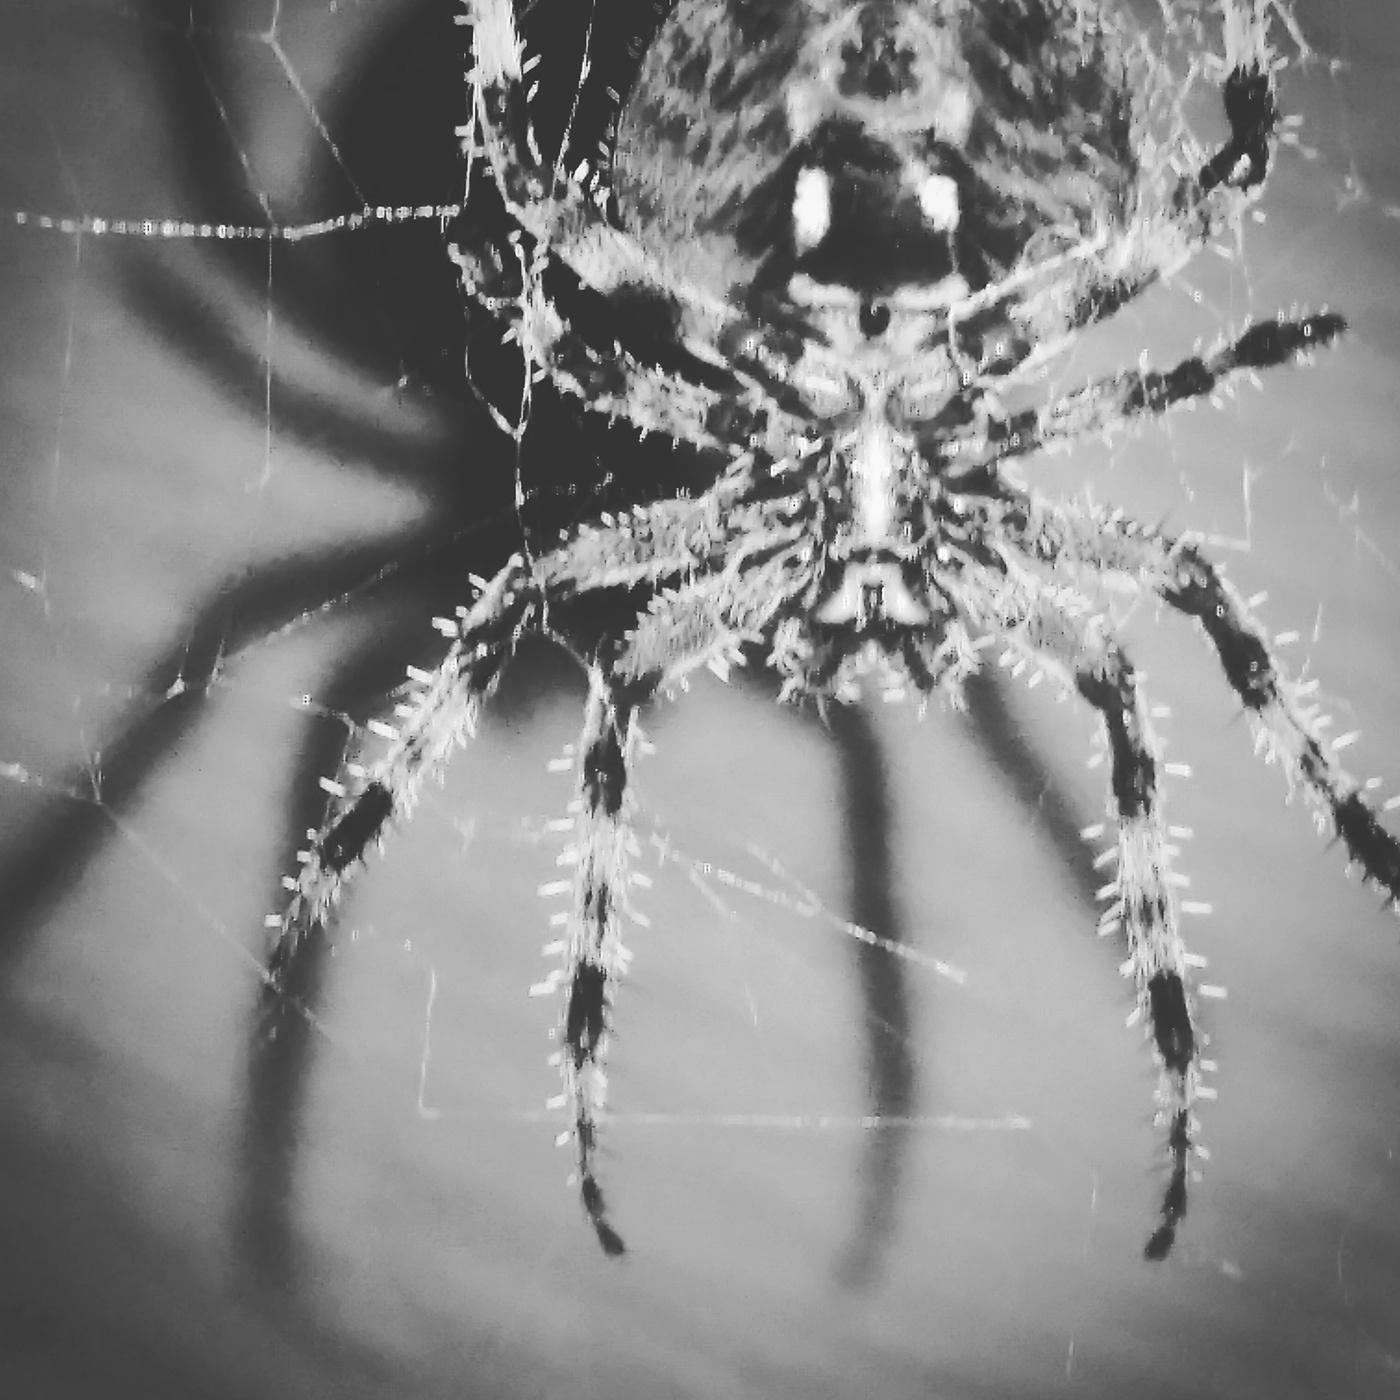 Arachnid arachnids giant spider macro Nature nature photography orb weaver orb weaver spider photo spider Spider close up spider photo spiders